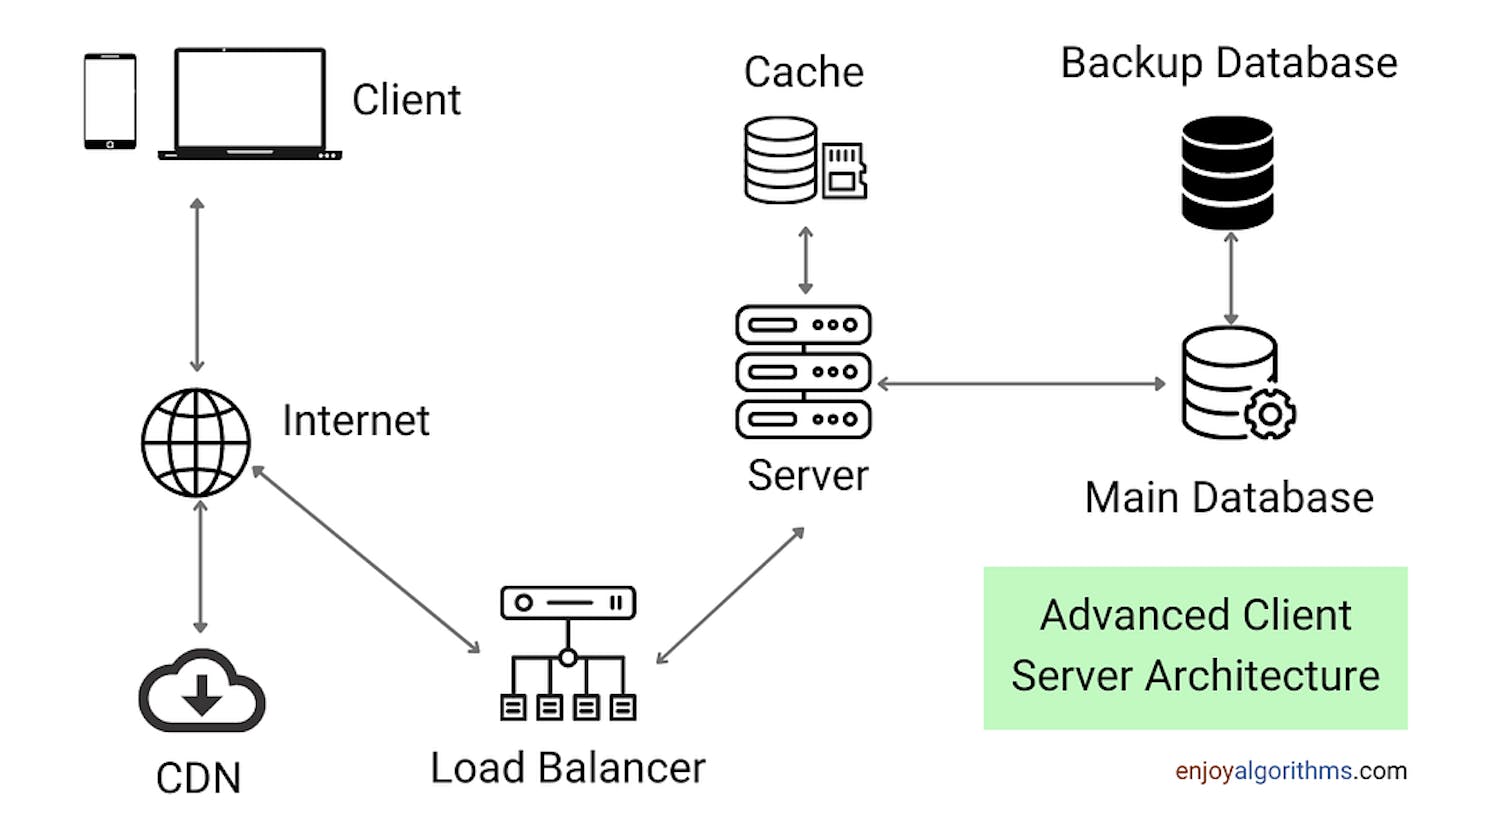 Client Server Architecture: